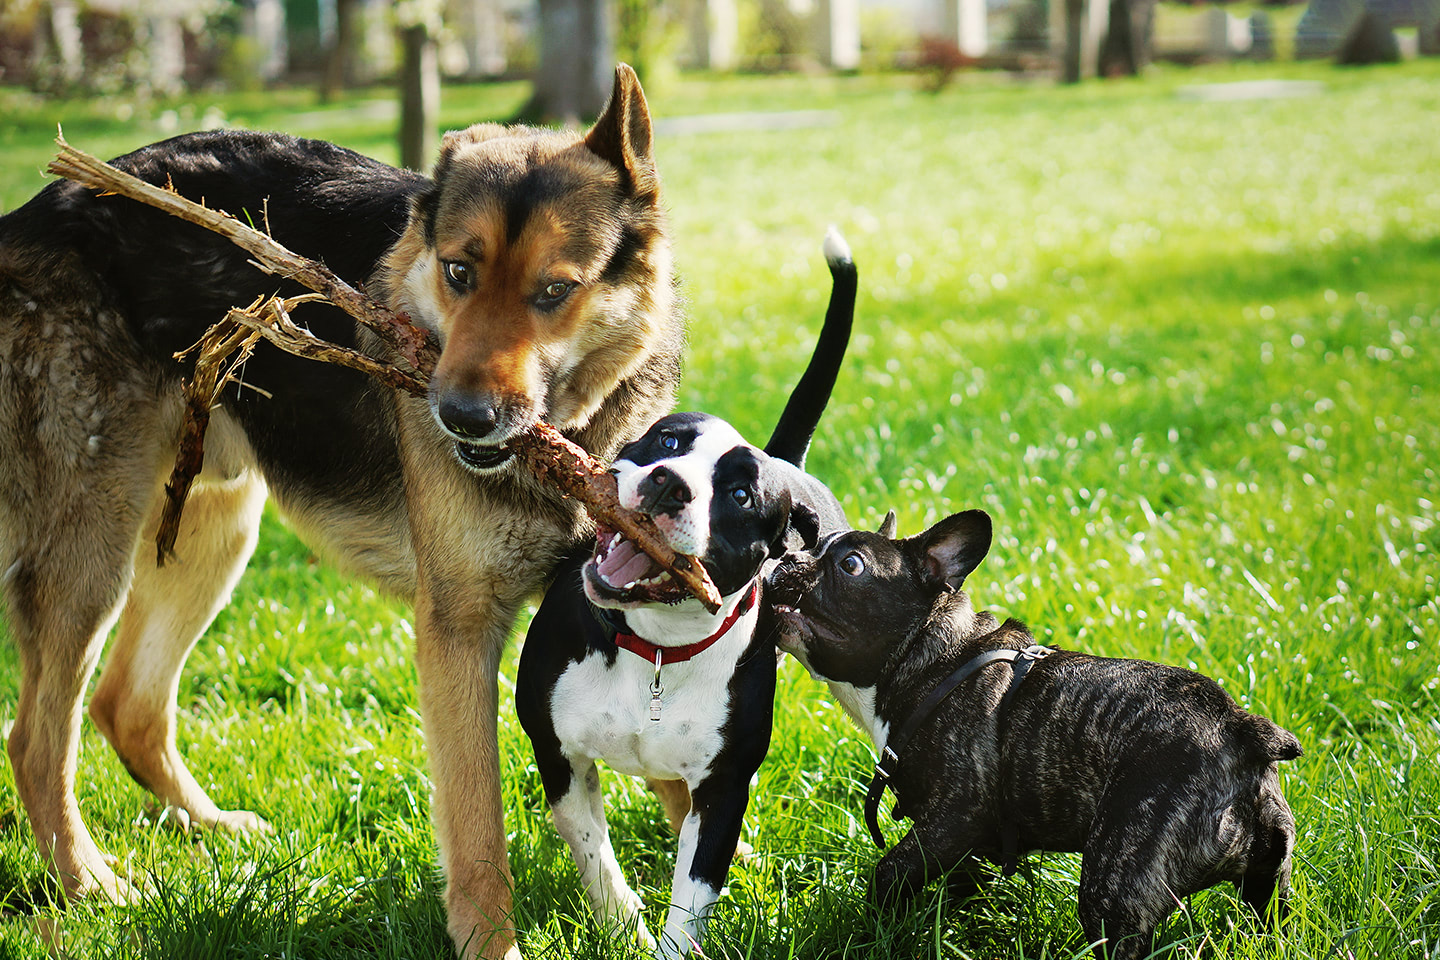 Tři psi se přetahují o klacek při hře v parku na trávě